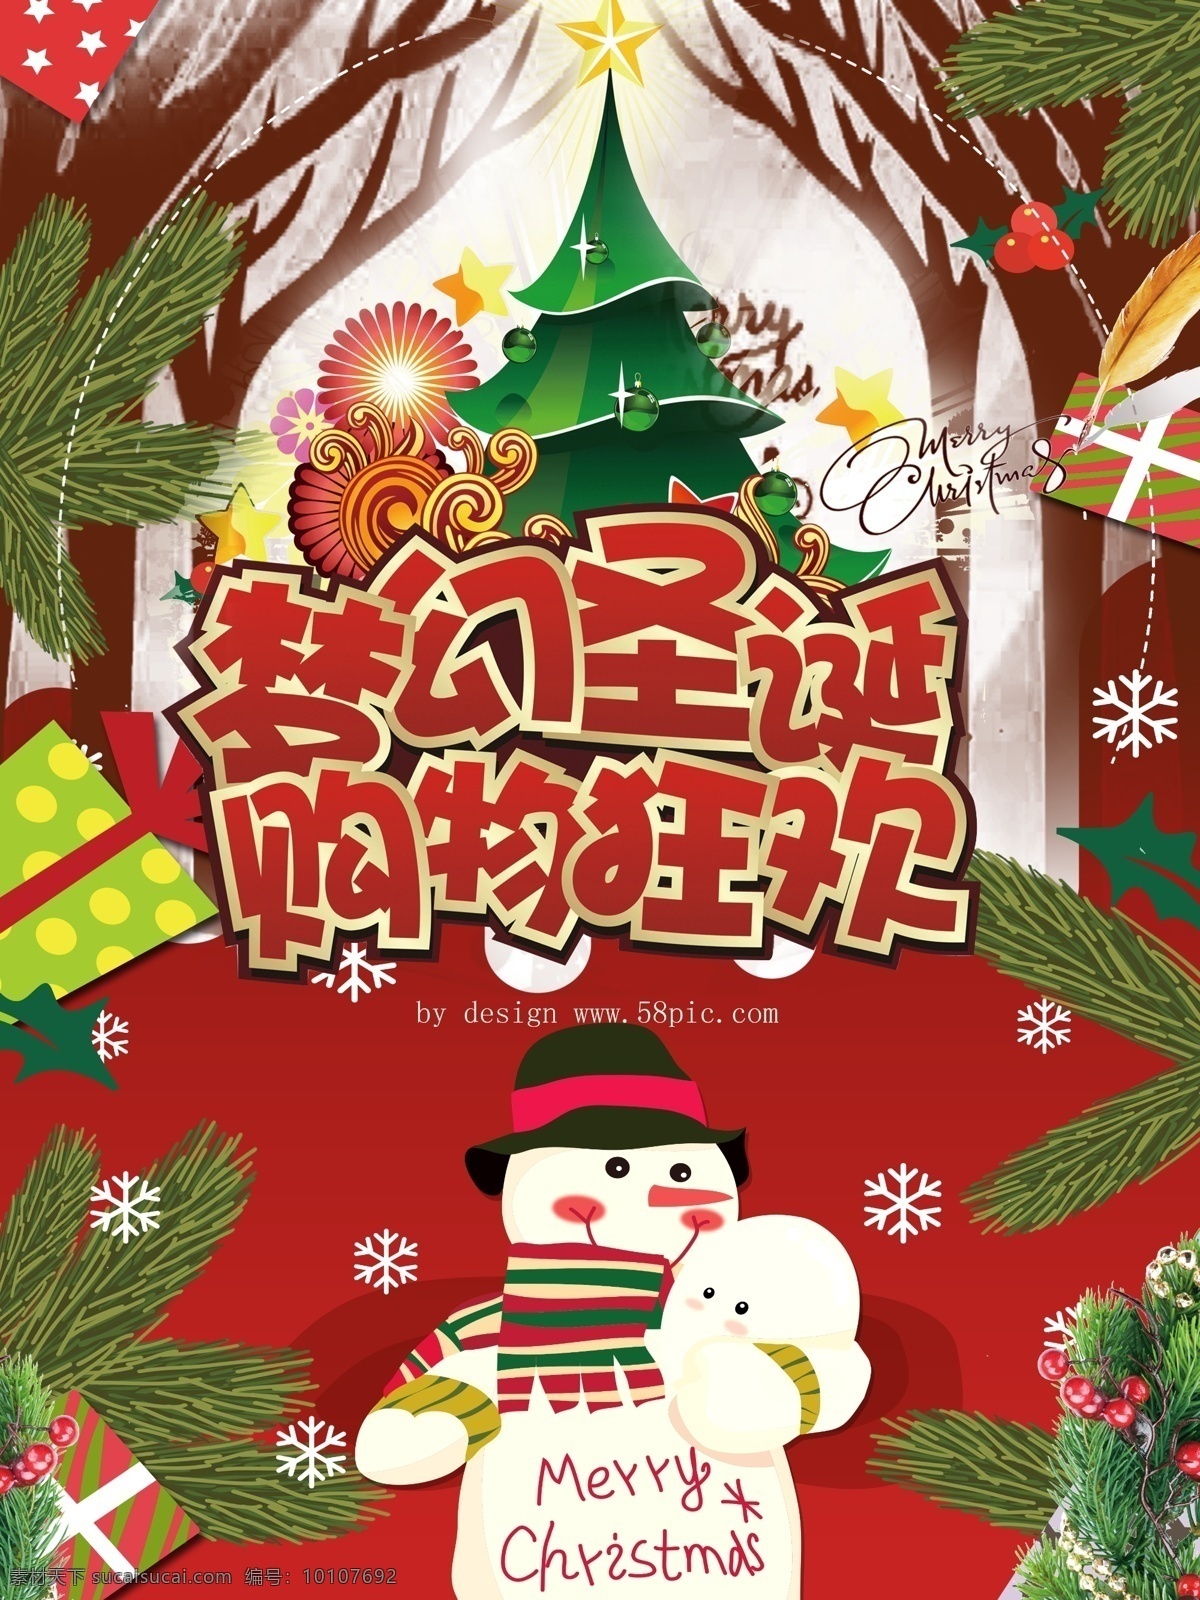 梦幻 圣诞 购物 狂欢 促销 梦幻圣诞 狂欢季 促销海报设计 圣诞出行季 圣诞树 雪人